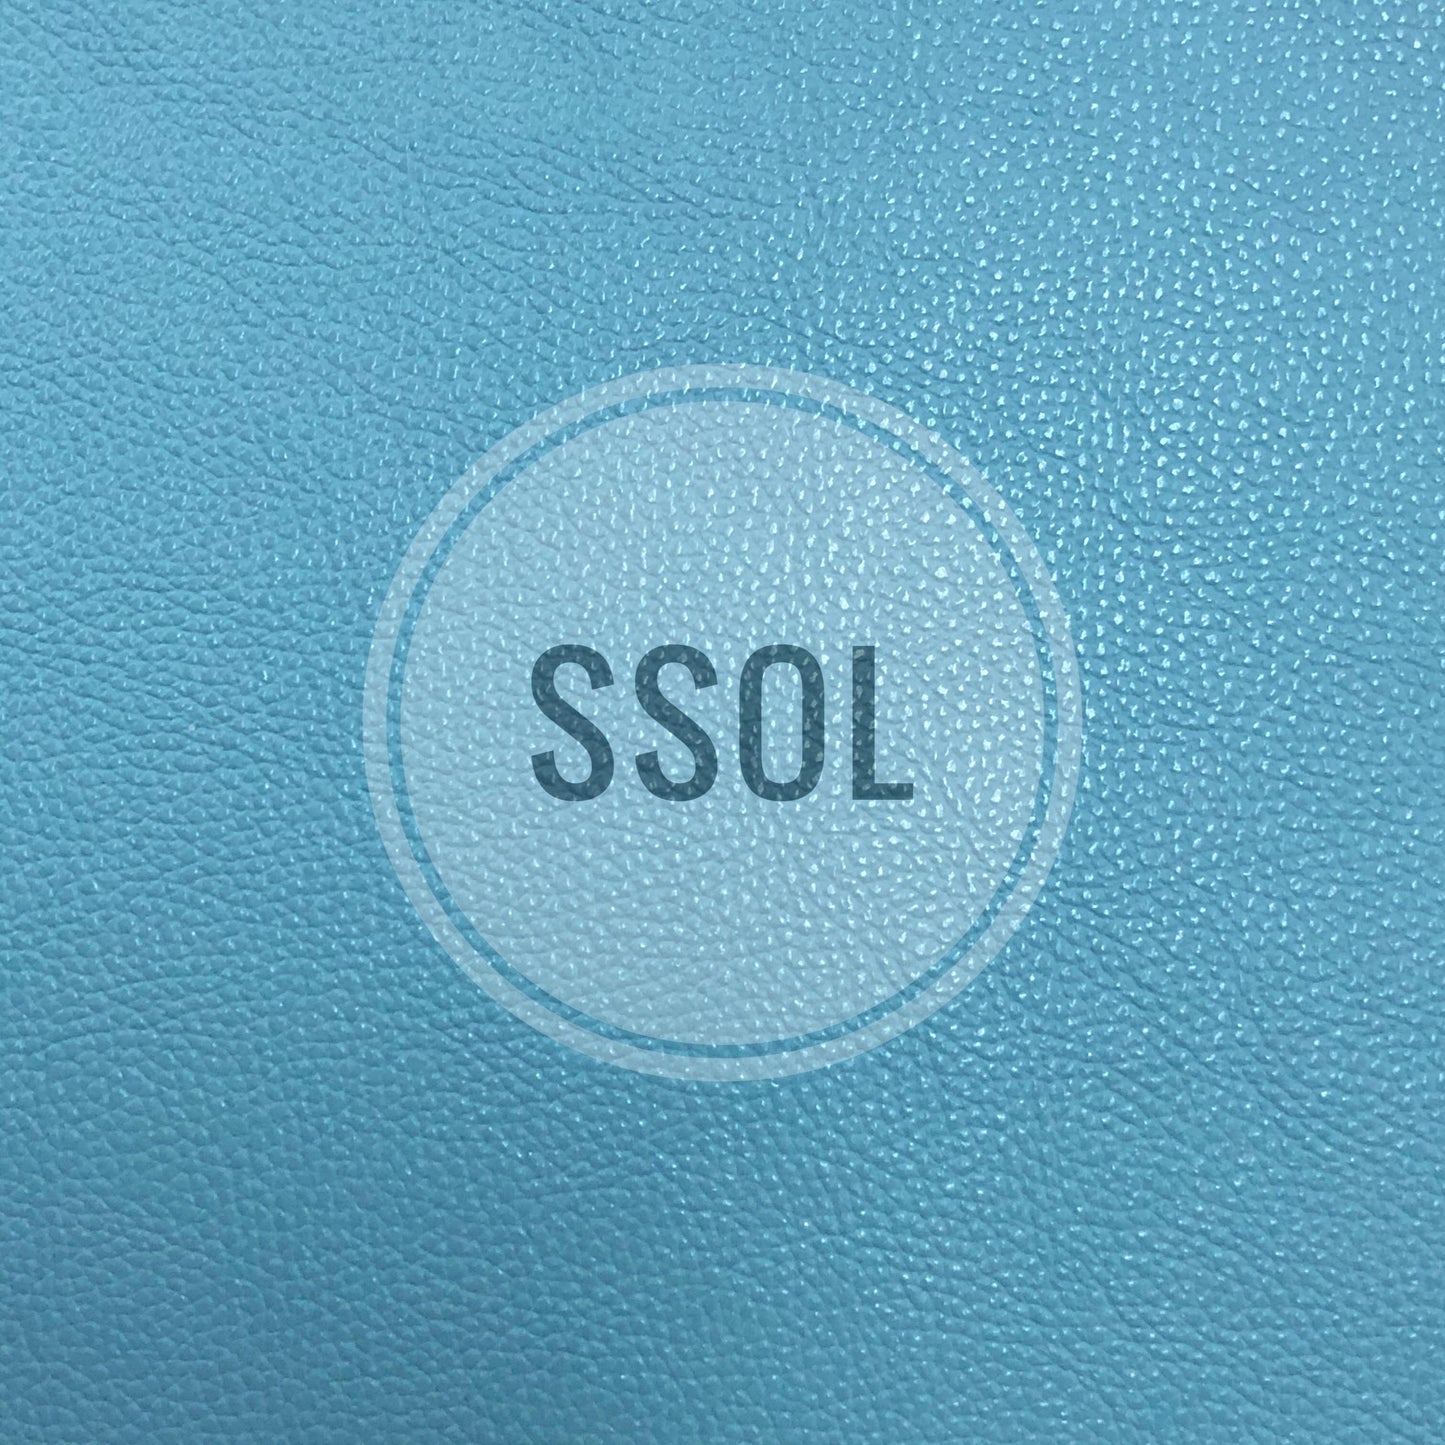 Vinyl/PU Leather - Plain Solids Textured 13 (Artic Blue)